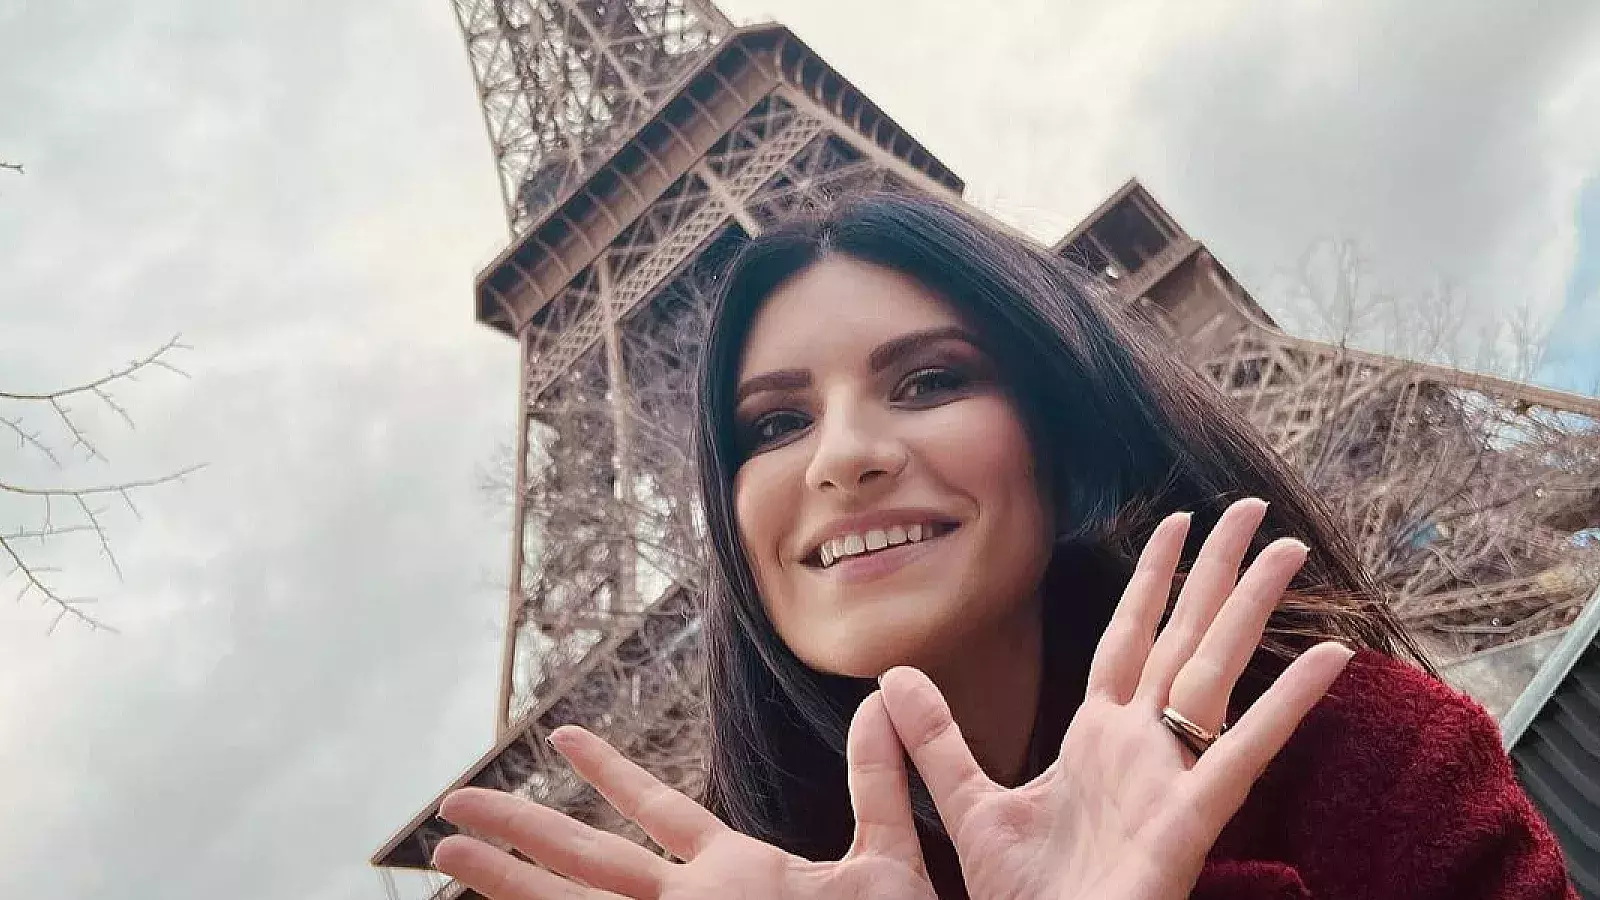 Ocurre atentado en las afueras de concierto de Laura Pausini en París